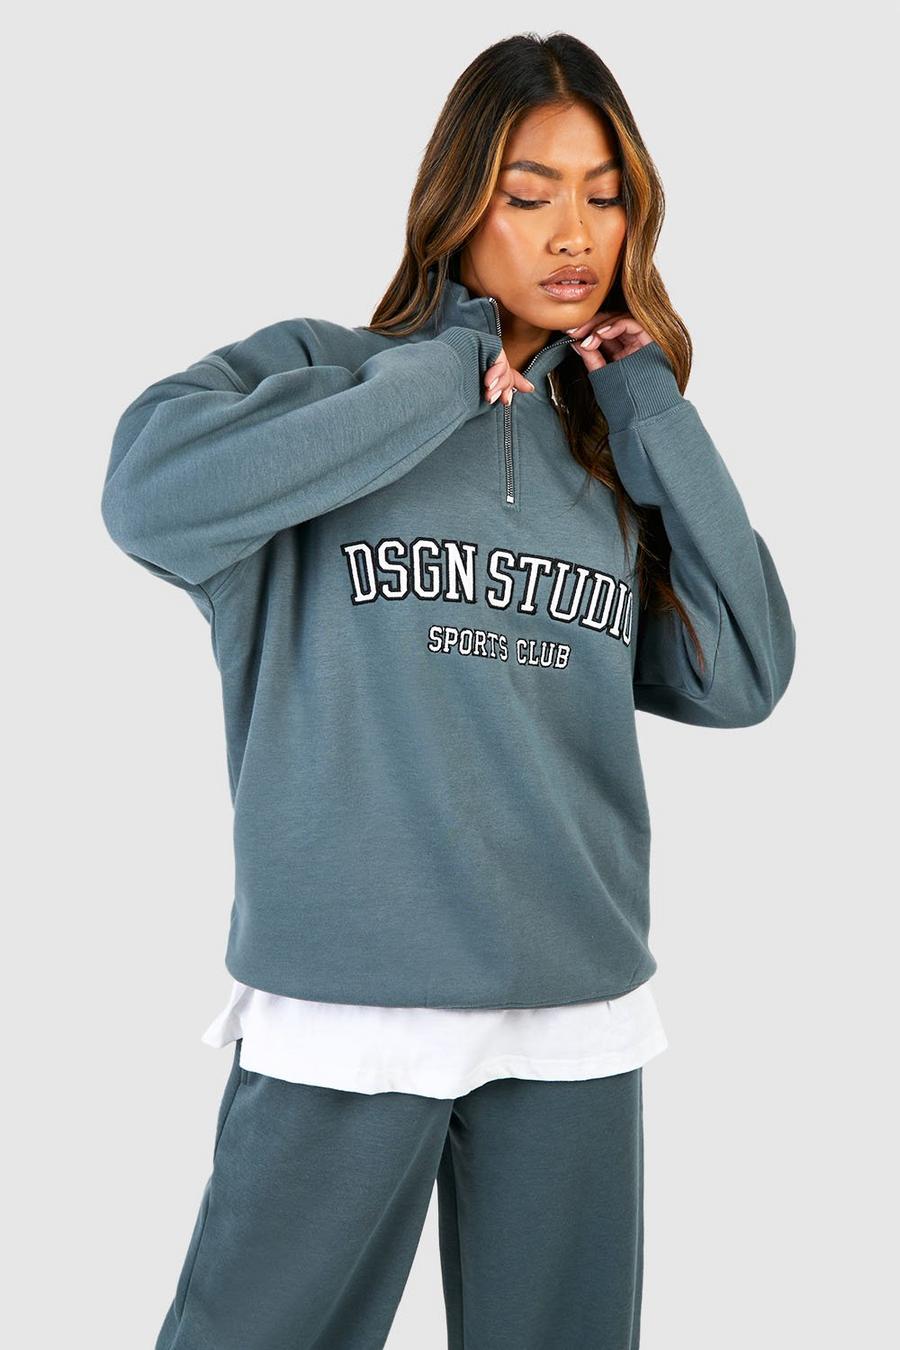 Sage vert Dsgn Studio Applique Oversized Half Zip Sweatshirt